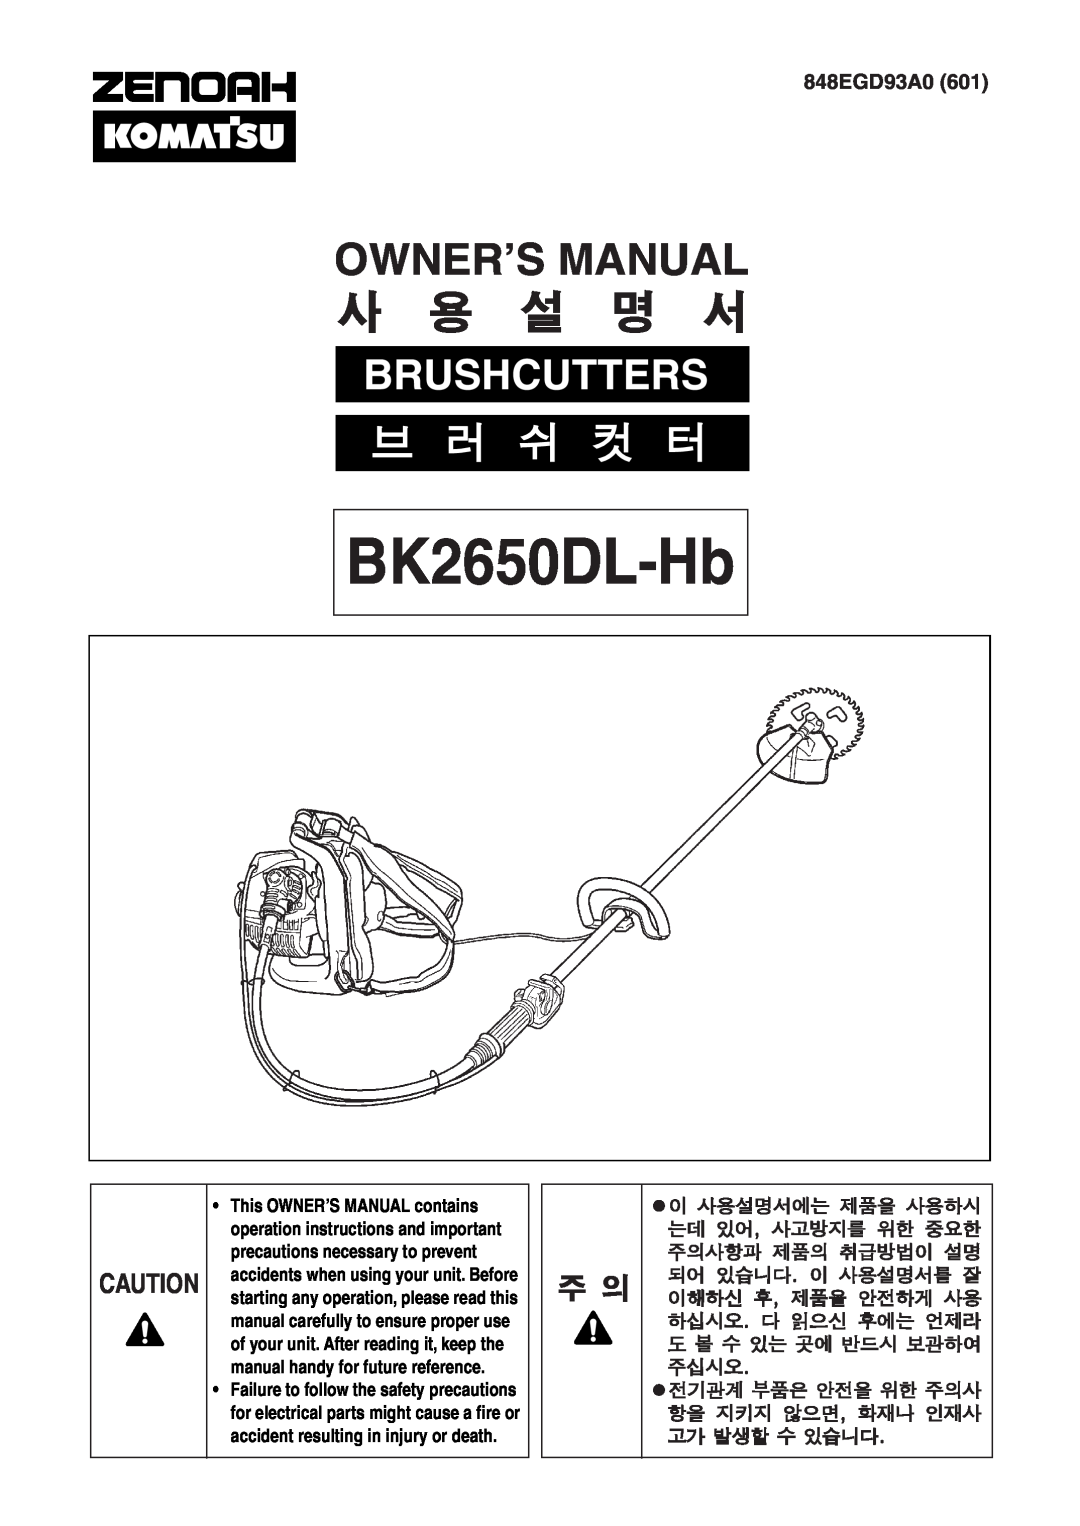 Zenoah BK2650DL-Hb owner manual 848EGD93A0, 전기관계 부품은 안전을 위한 주의사 항을 지키지 않으면, 화재나 인재사 고가 발생할 수 있습니다, Owner’S Manual 